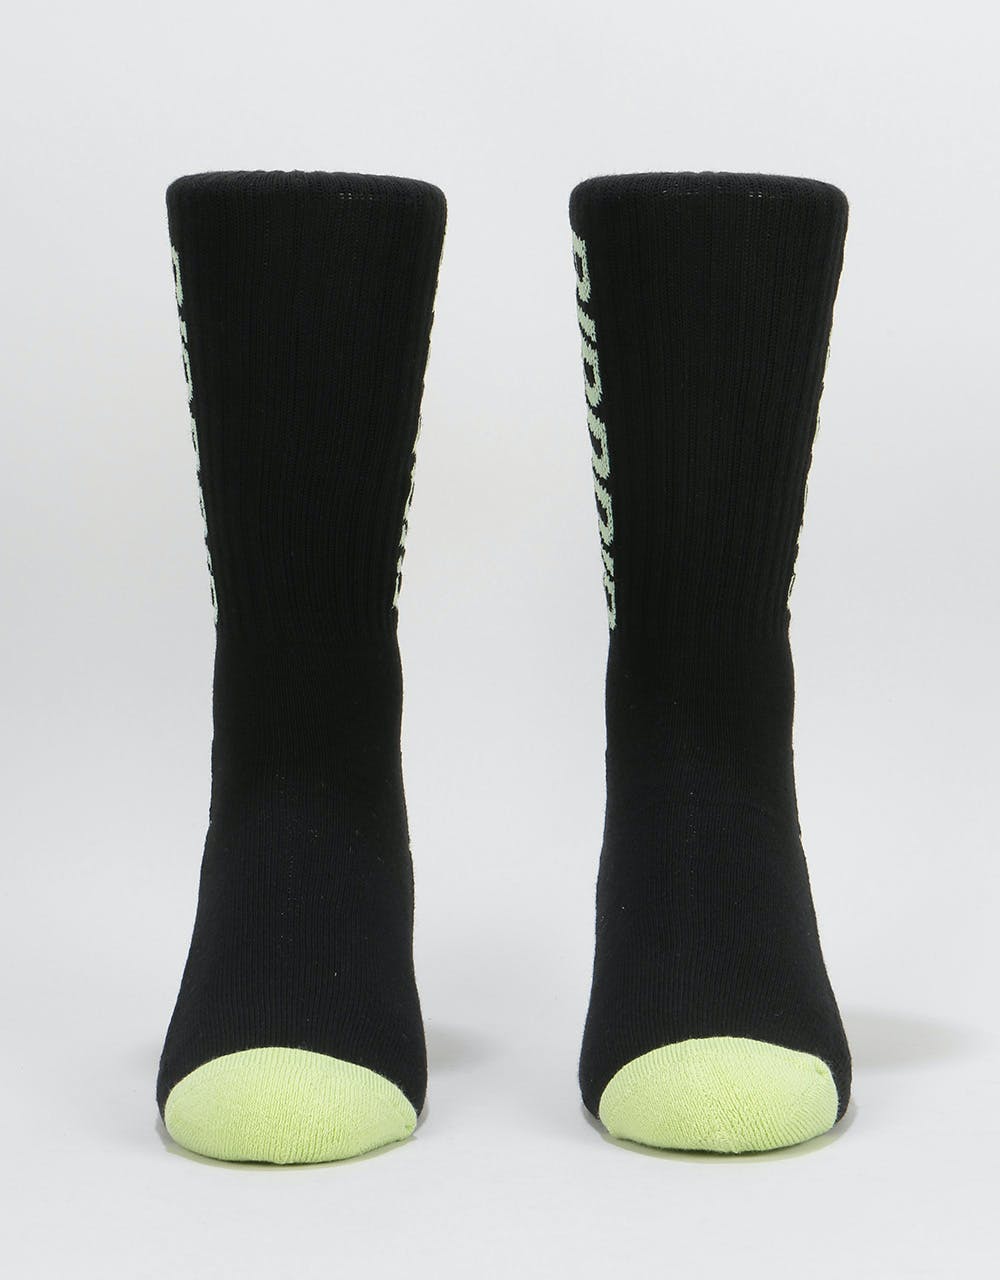 RIPNDIP Fast Socks - Black/Green